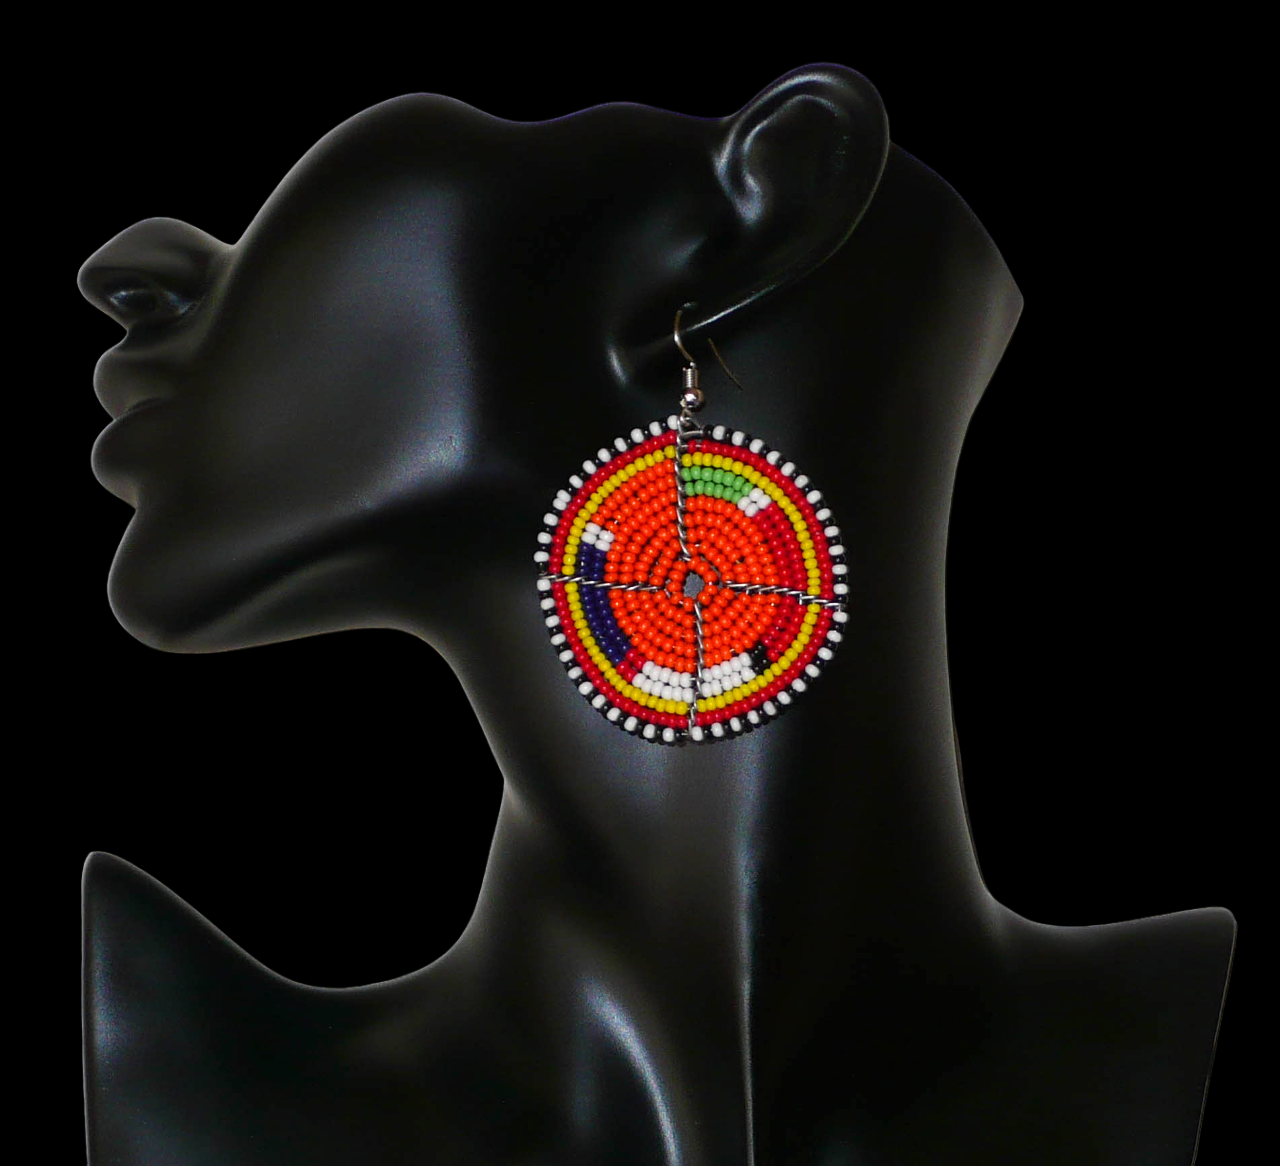 Boucles d'oreilles africaines traditionnelles Massai faites de perles de rocaille orange et multicolores glissées sur des structures circulaires en fils de fer. Elles mesurent 6,5 cm de long et 5 cm de large, et se portent avec des attaches en acier inoxydable sur des oreilles percées.